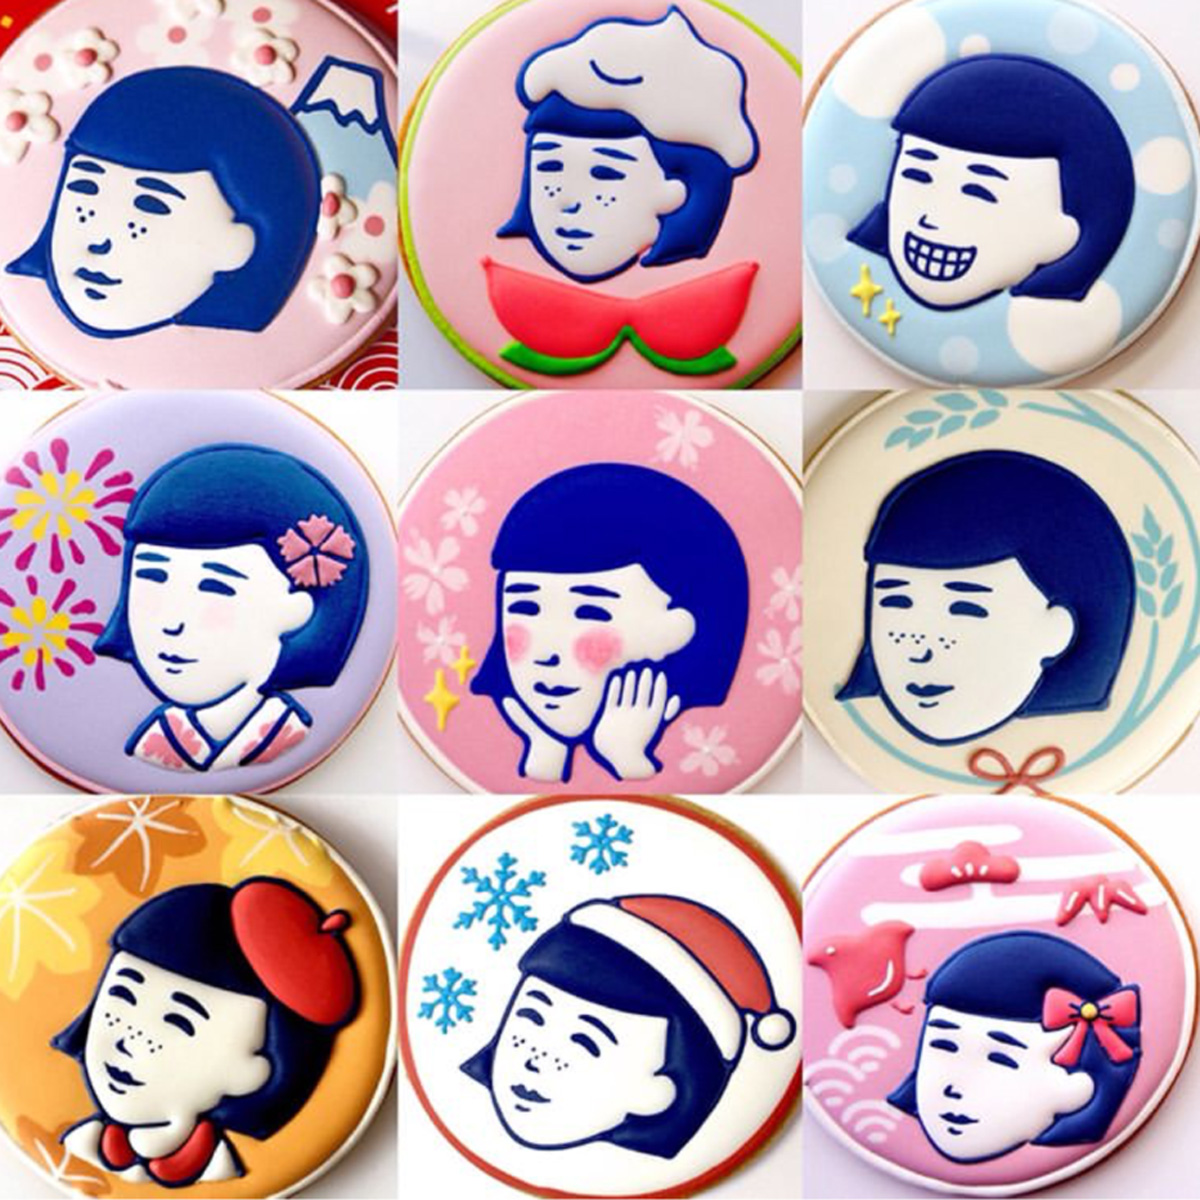 石澤研究所「毛穴撫子」10周年キャンペーン企画クッキー